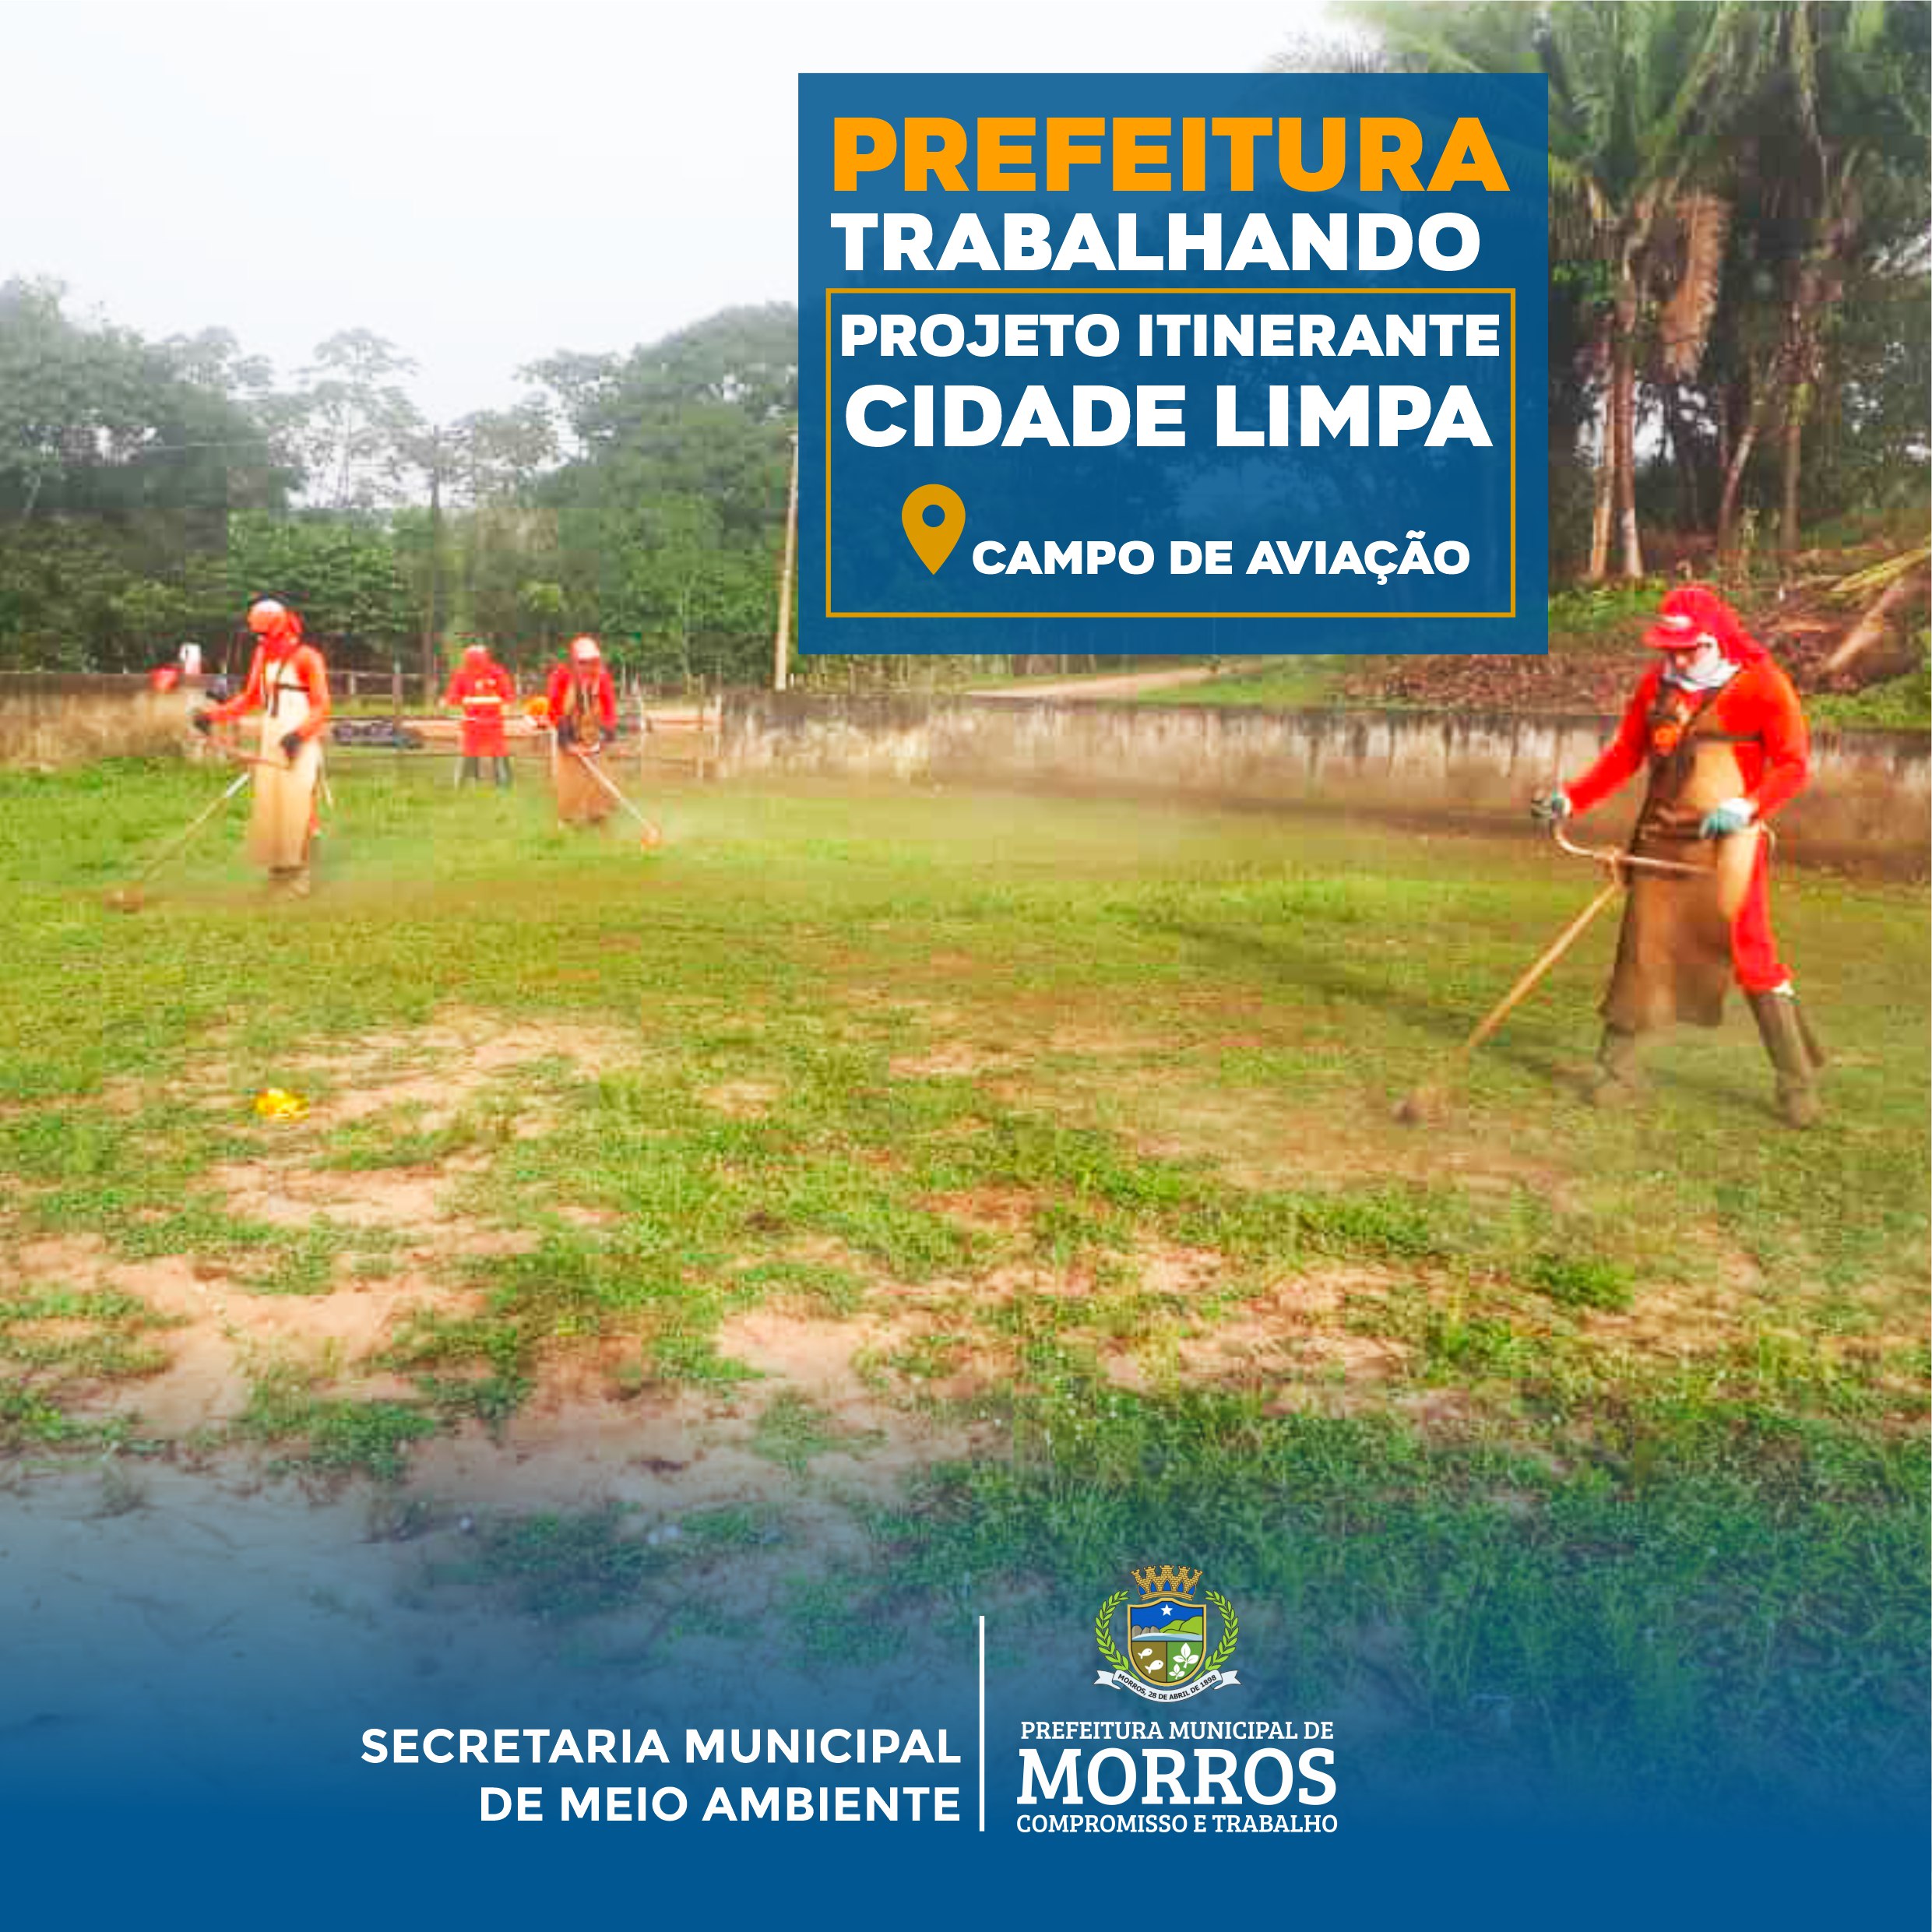 A Prefeitura Municipal de Morros, através da Secretaria de Meio Ambiente, realiza semanalmente ações de limpeza urbana do projeto itinerante Cidade Limpa